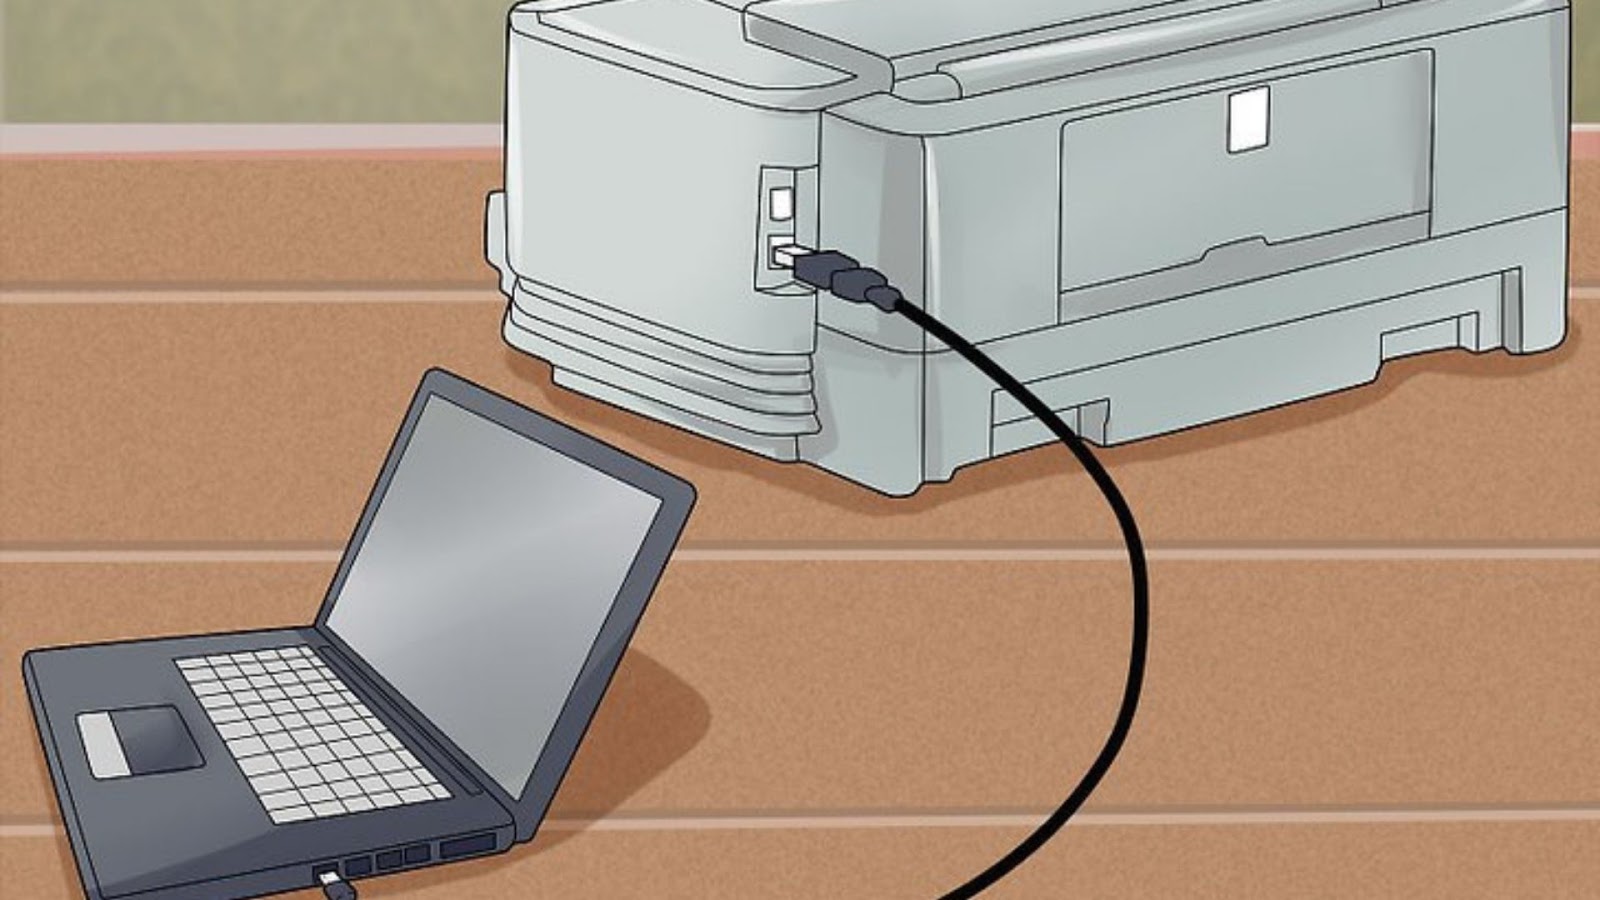 Через ноут принтер. Кабель подключить принтер к компьютеру юсб. Kak podkluchit Printer Canon k kompyuteru. Соединитель для принтера и ноутбука. Подключить принтер к ноутбуку.